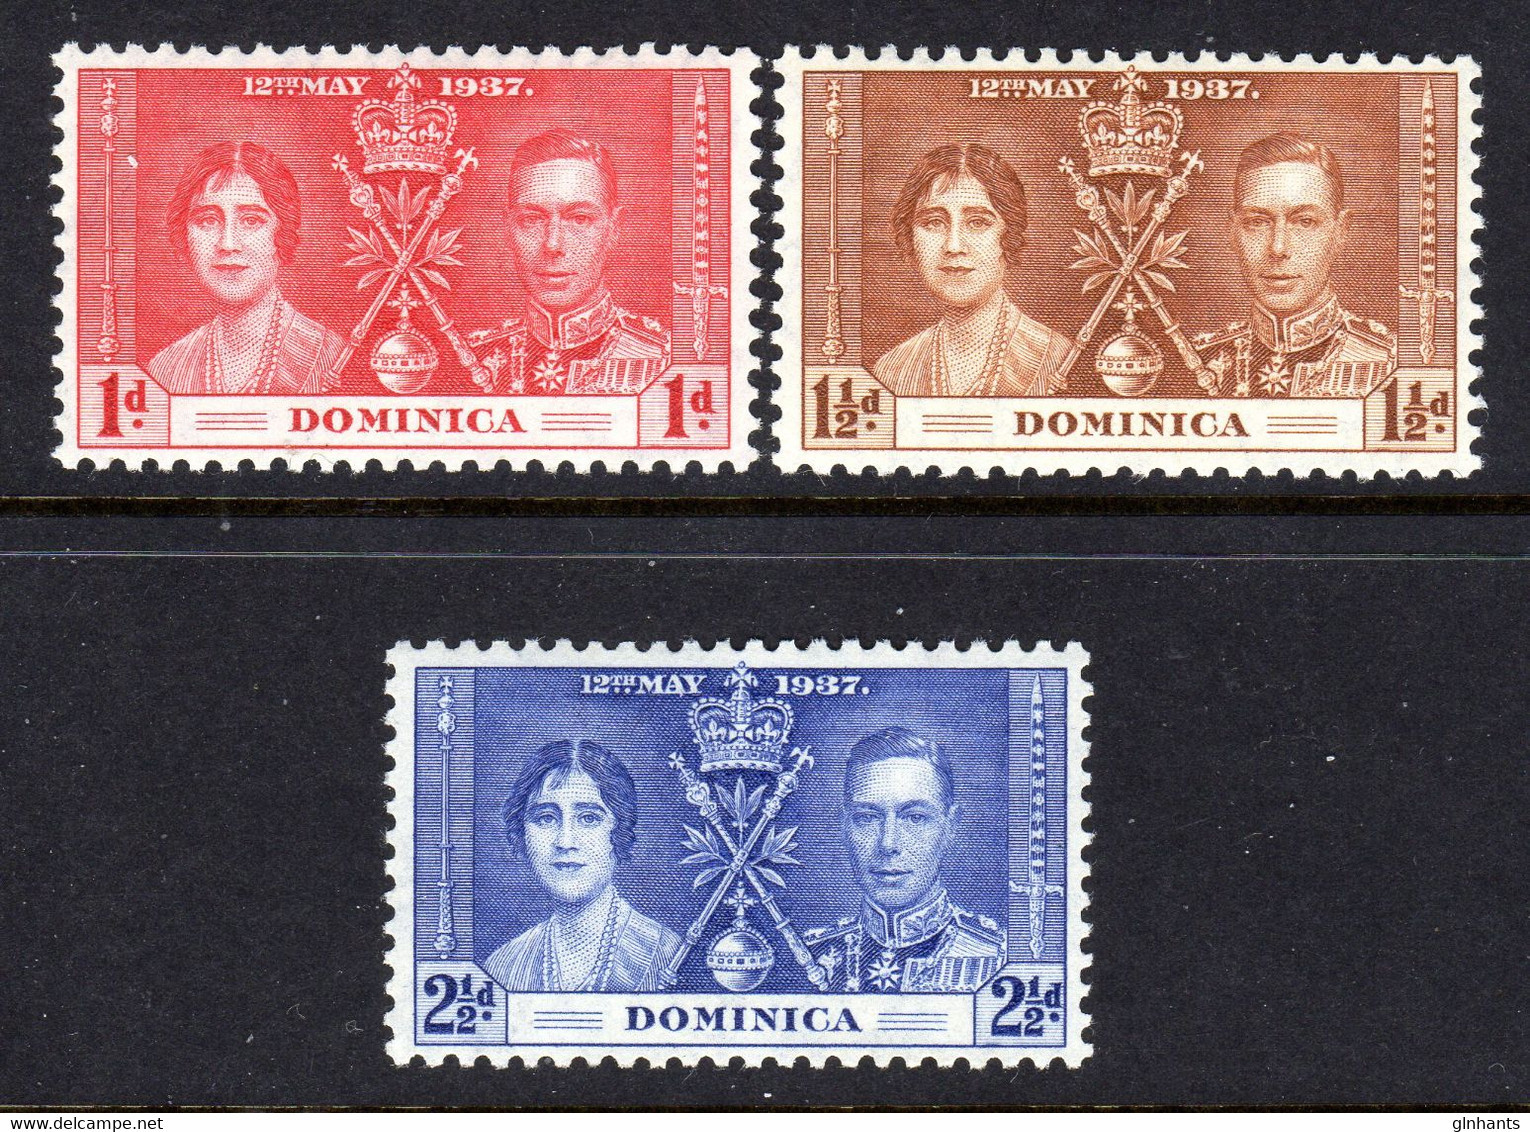 DOMINICA - 1937 CORONATION SET (3V) FINE MNH ** SG 96-98 - Dominique (...-1978)